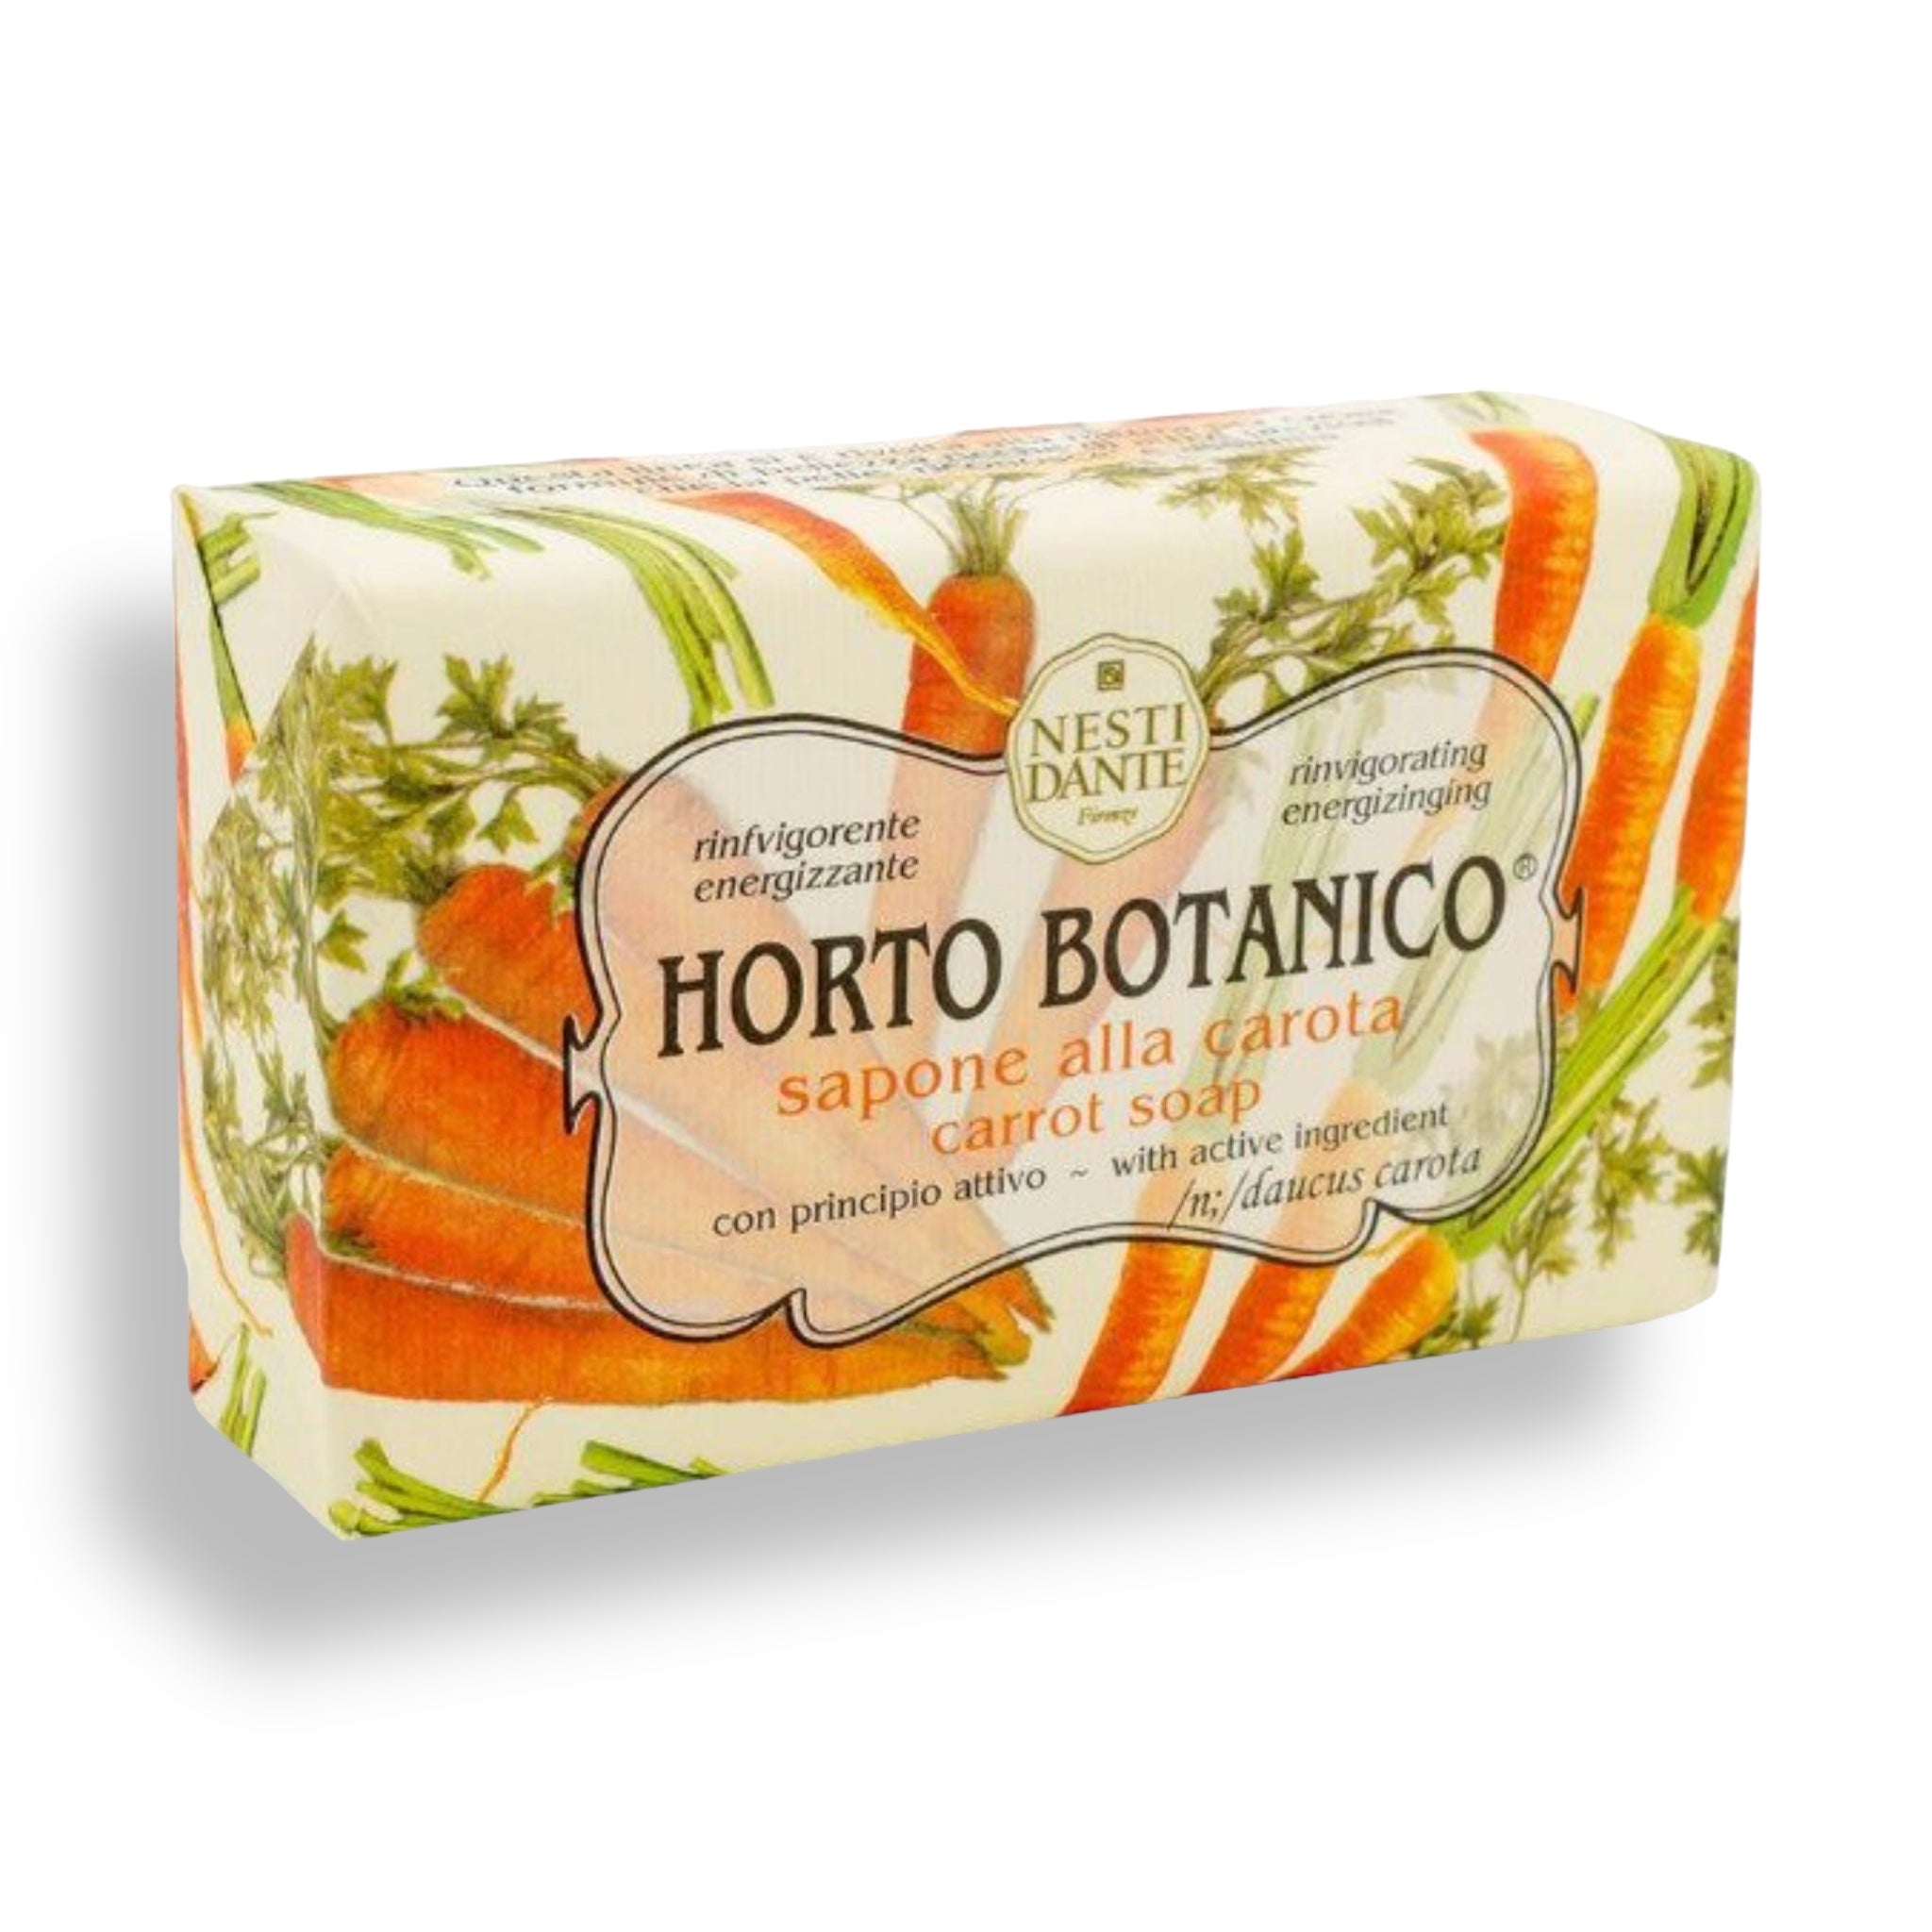 NESTI DANTE Italy - Carrot Bar Soap - Horto Botanico - MerryBath.com